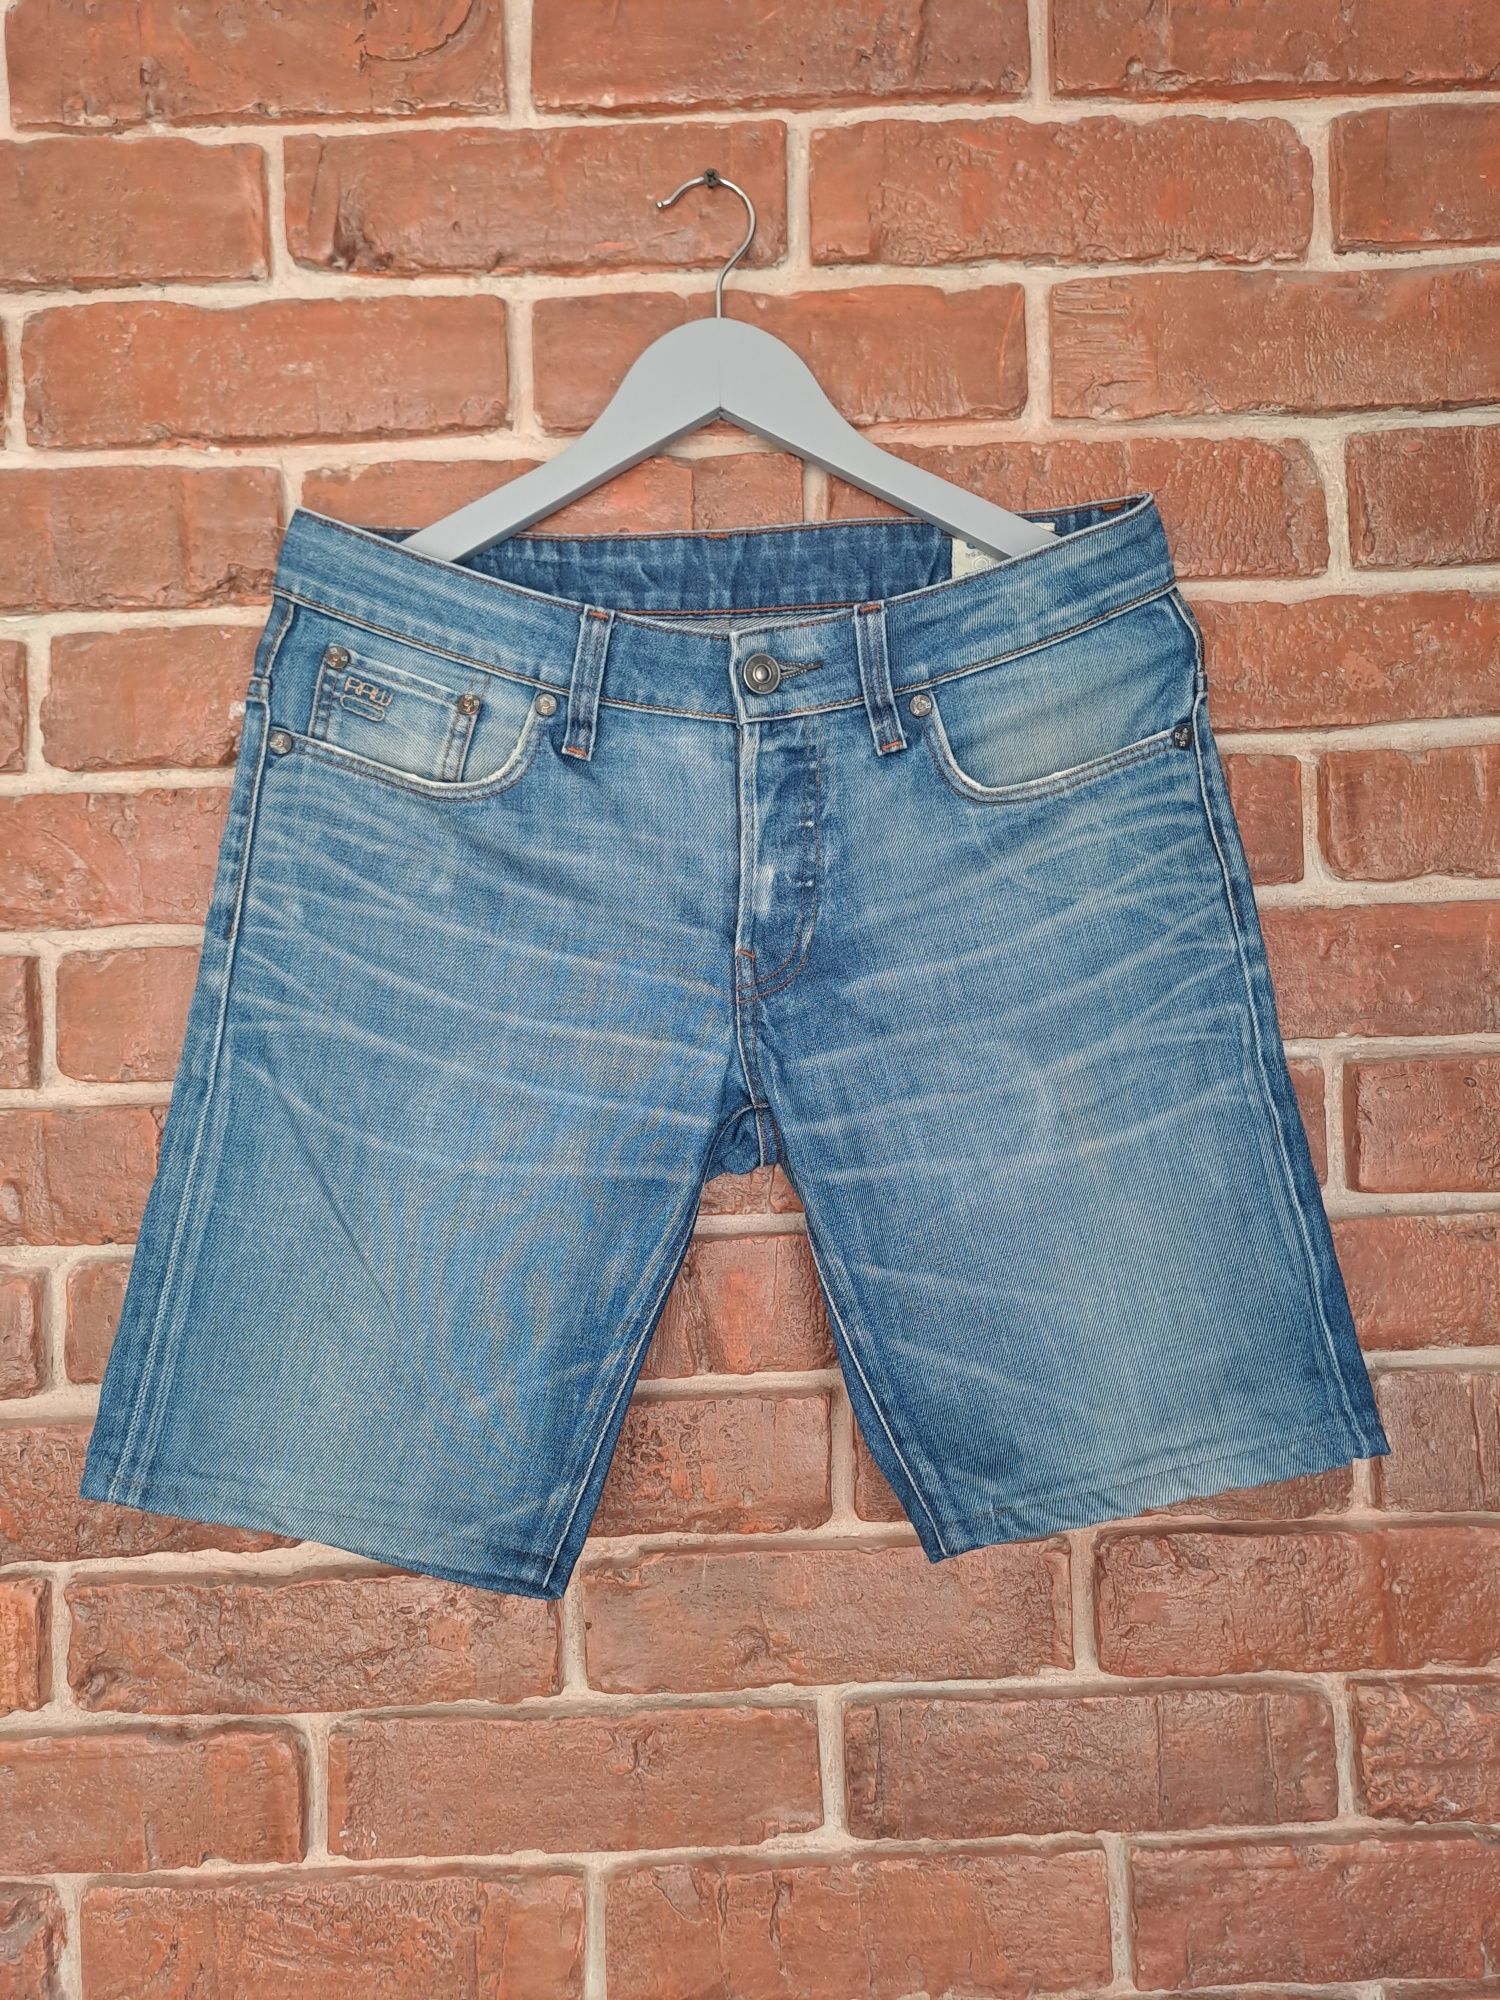 Męskie szorty krótkie spodenki jeansowe G-star RAW r. M 31/32